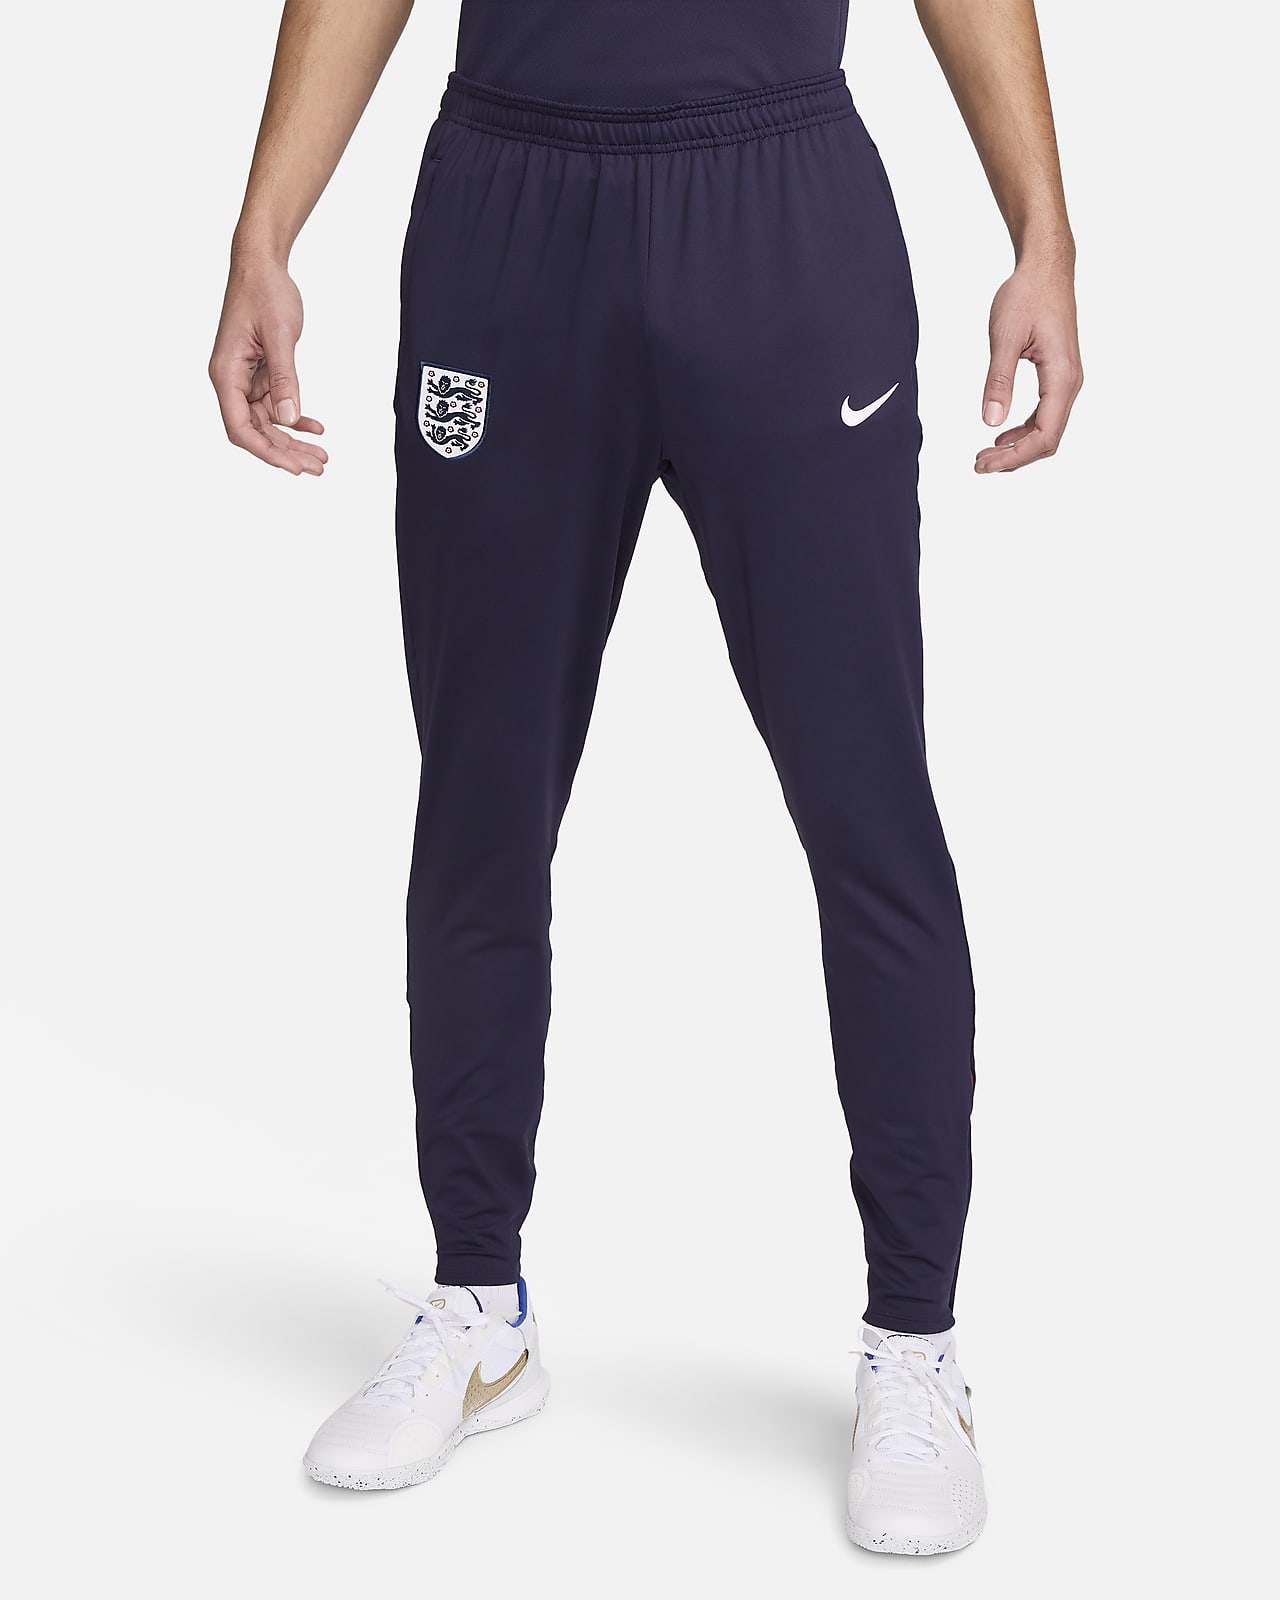 England Strike Nike Dri-FIT strikket fotballbukse til herre